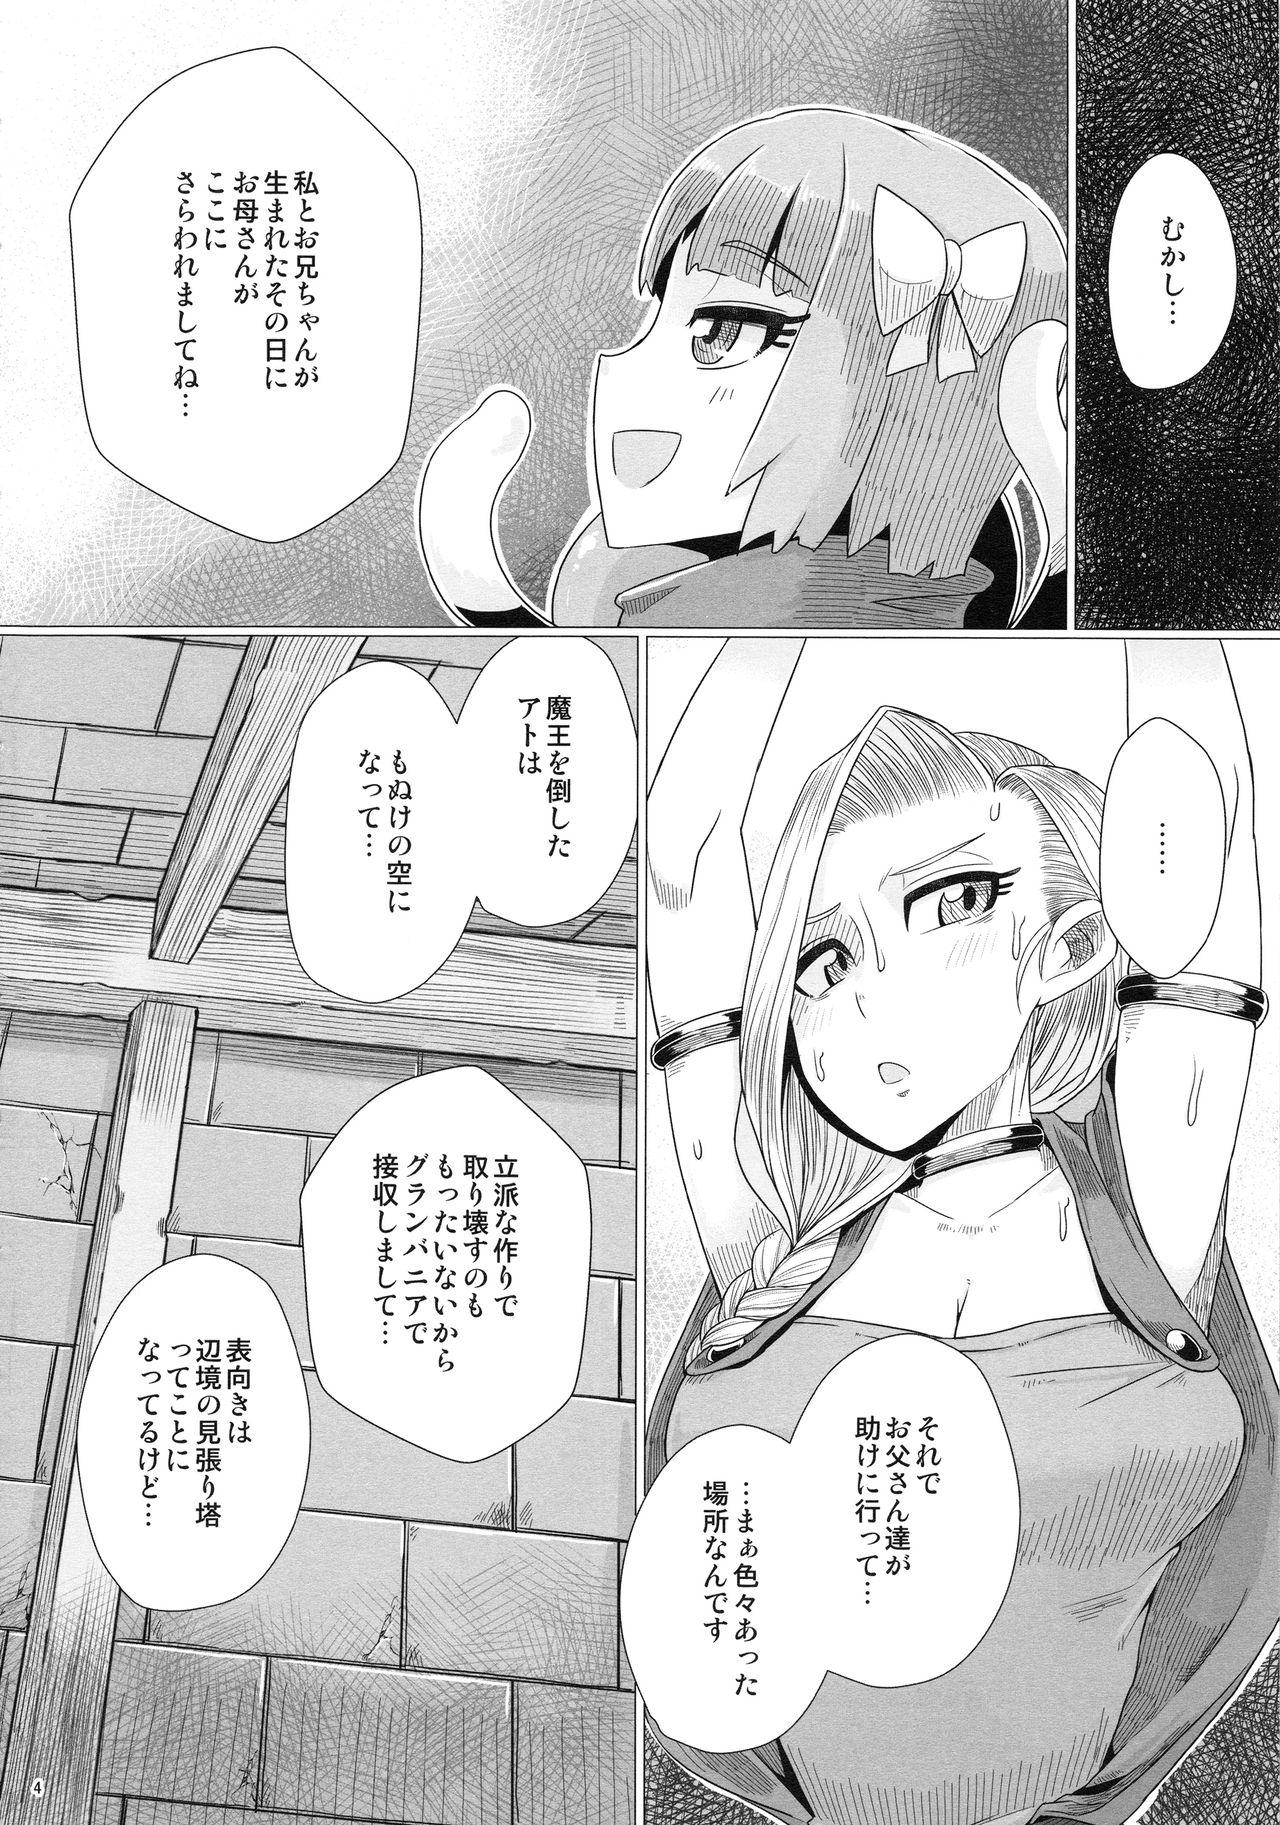 Speculum Zoku Yamaoku e Ikou! - Dragon quest v Novinho - Page 5